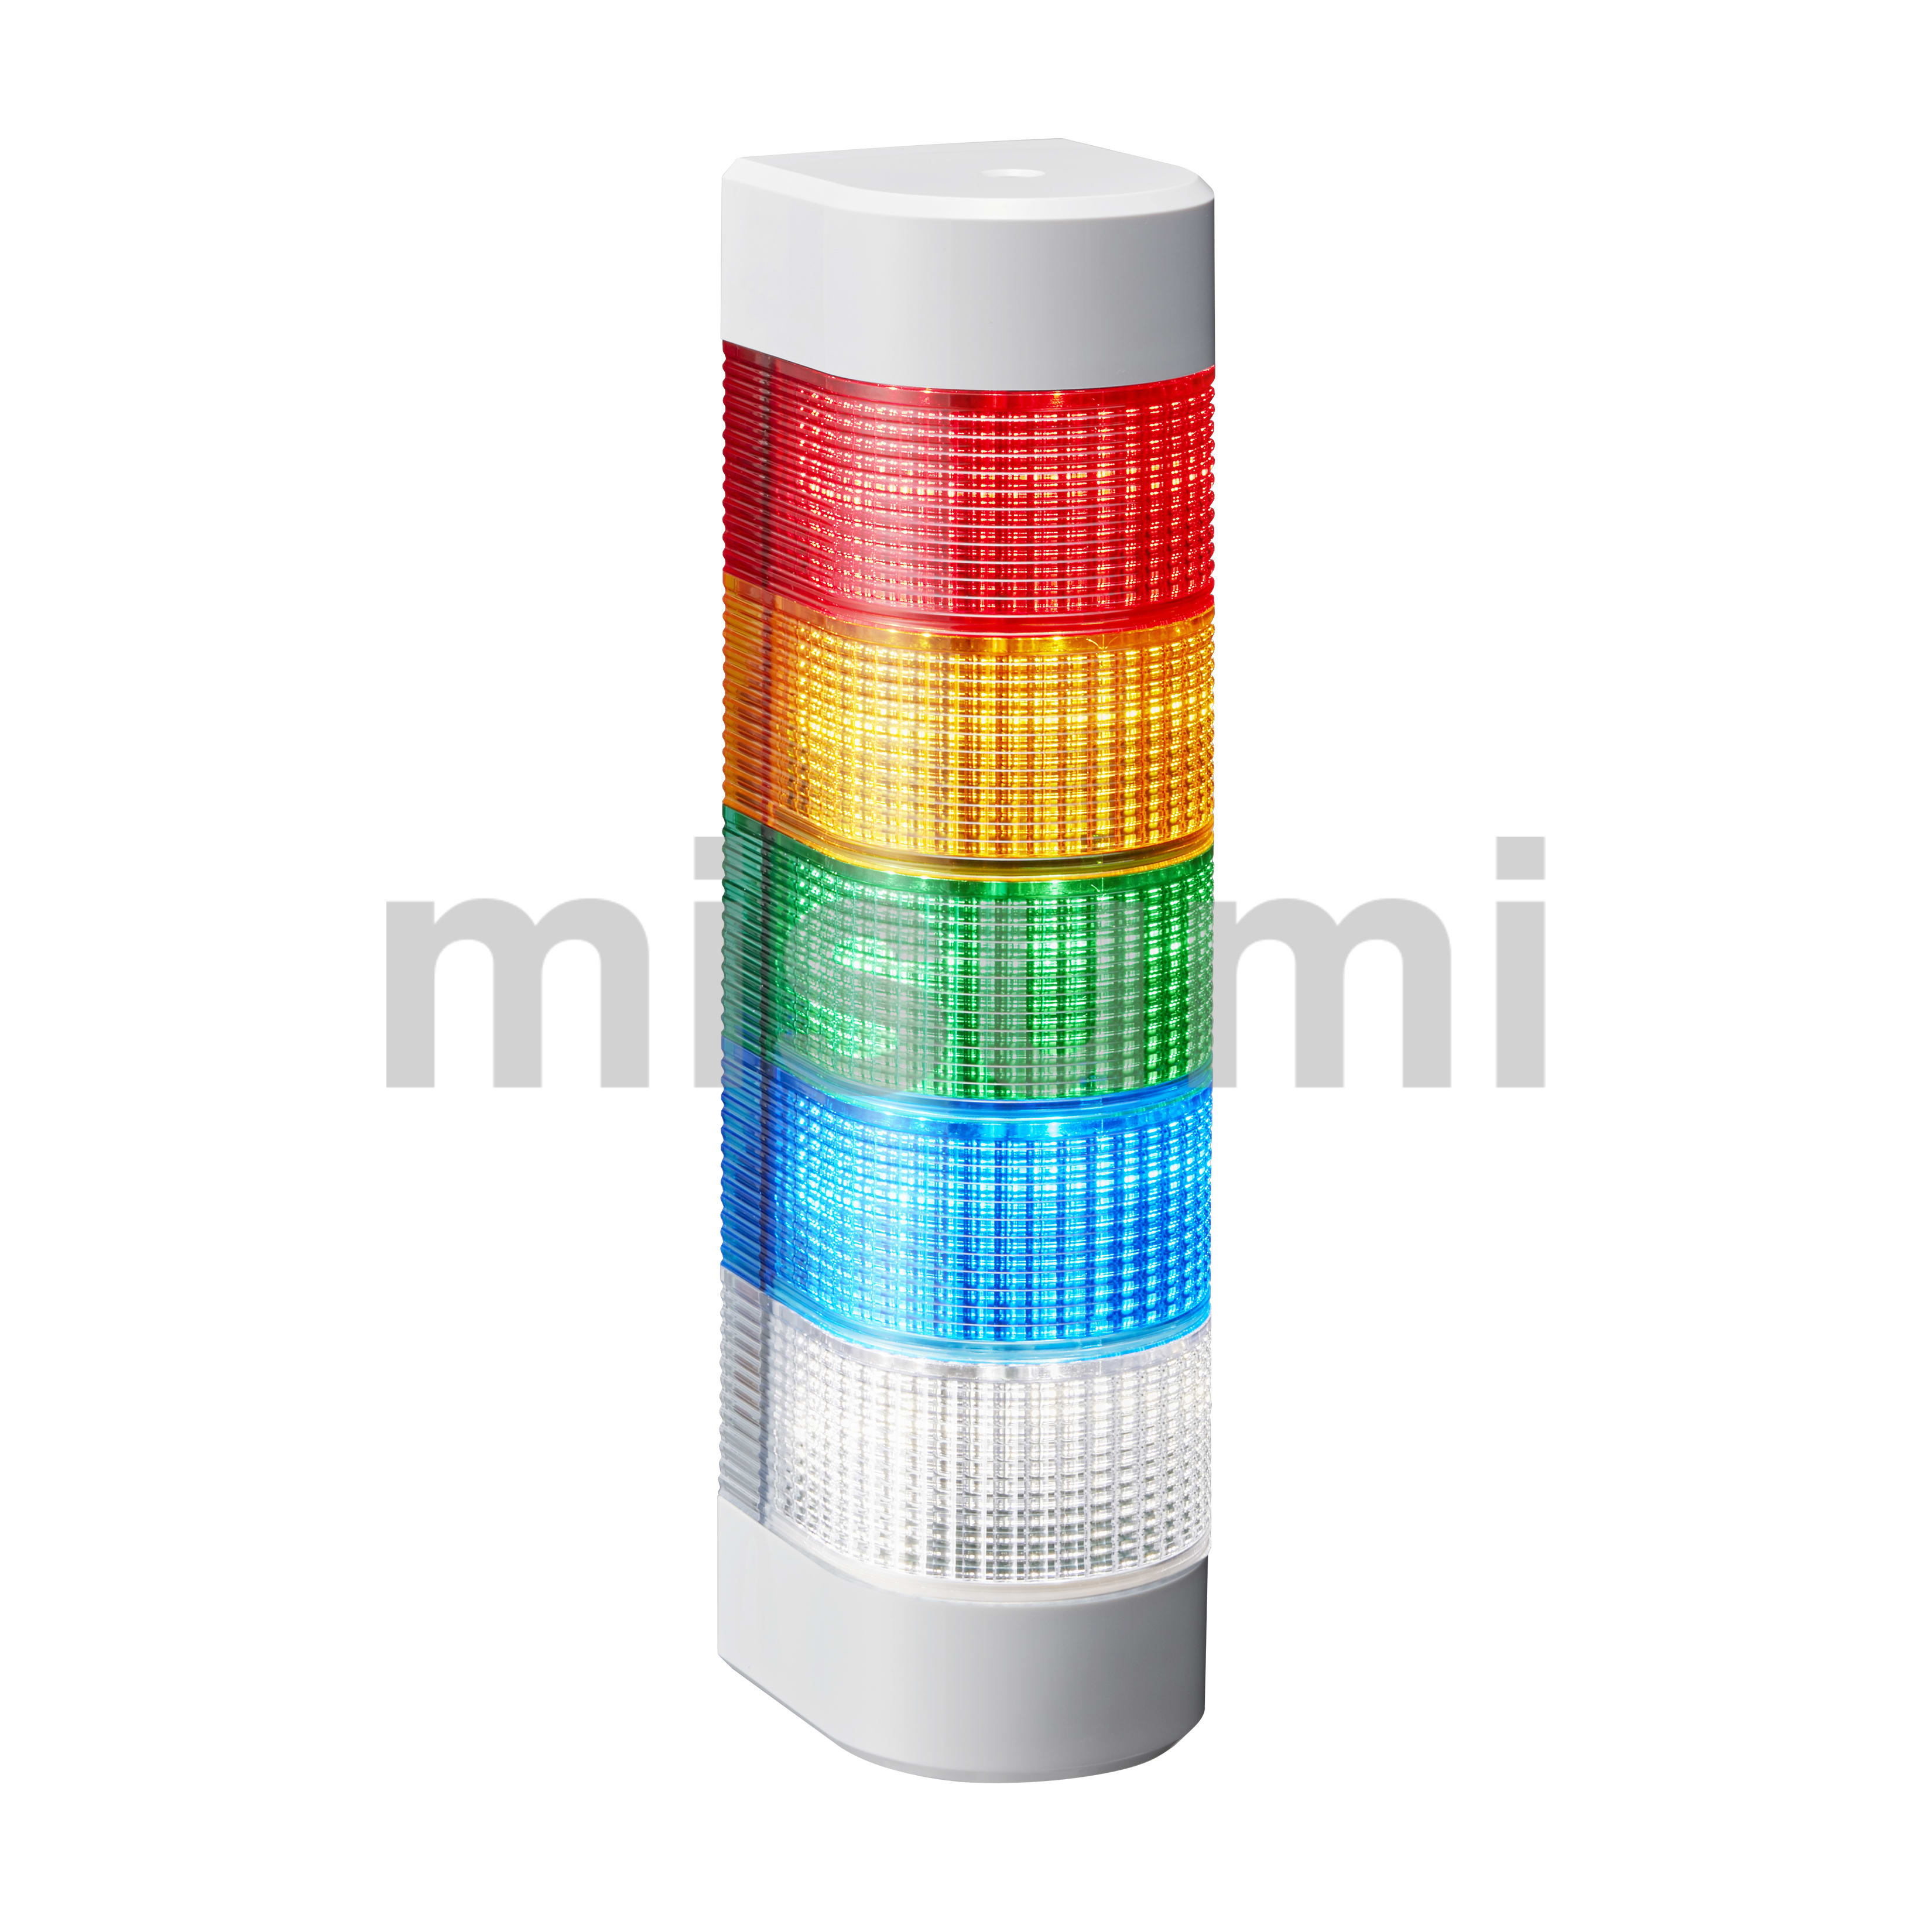 LED壁面取付け積層信号灯 パトライト MISUMI(ミスミ)